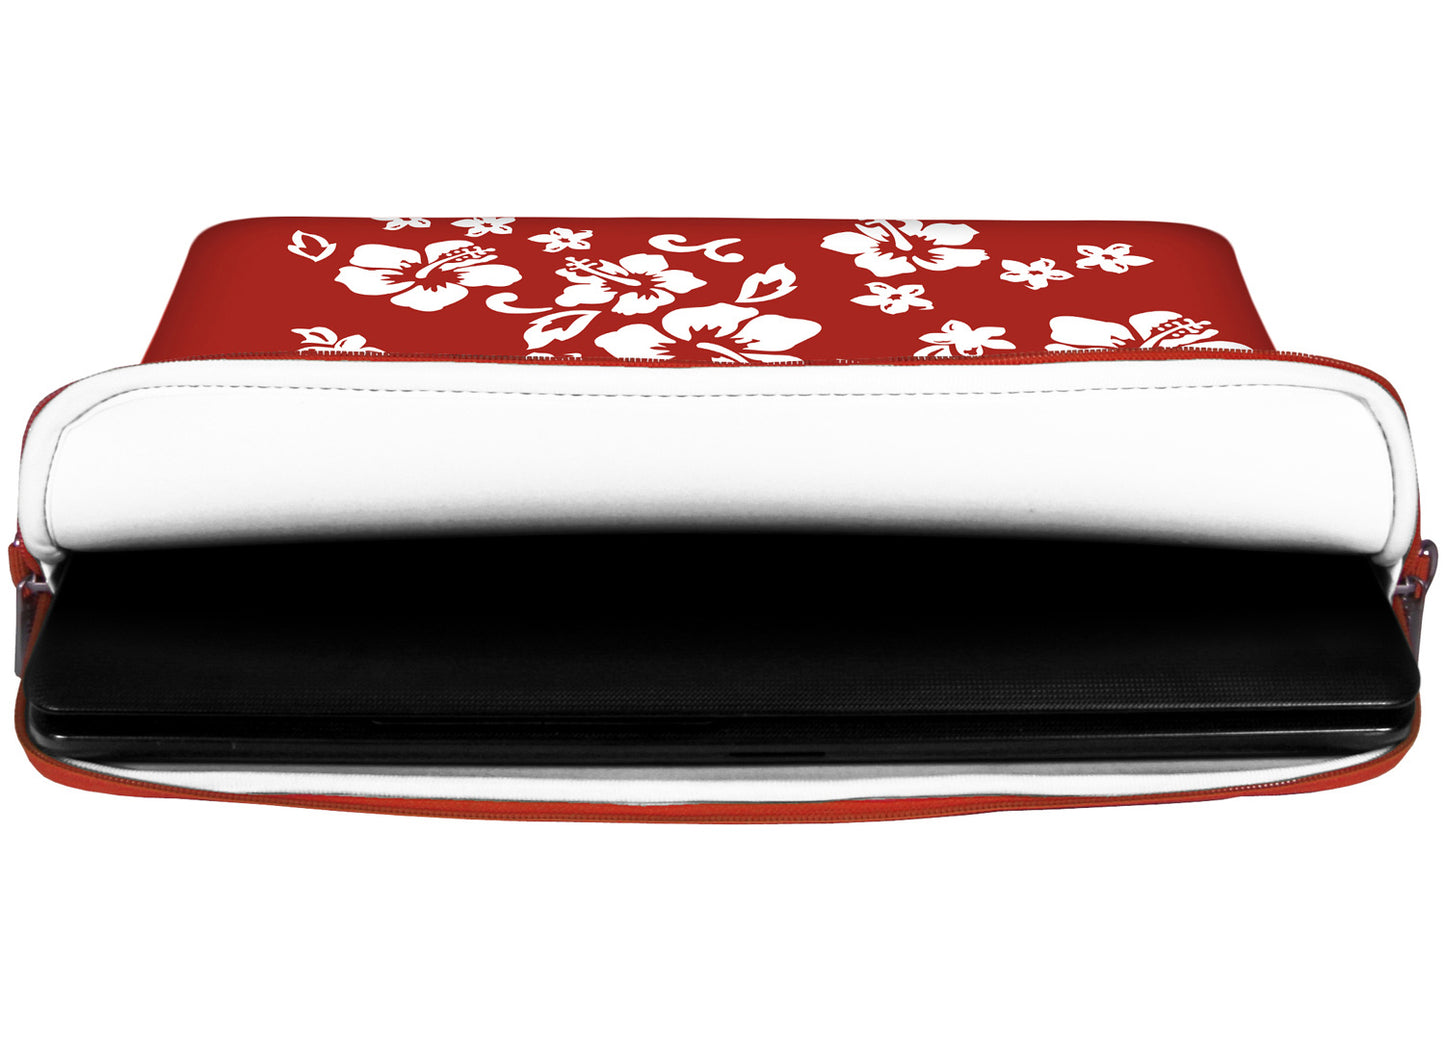 Innenansicht mit Schutzlippen der LS107 Red Flower Designer Laptop Tasche in weiß aus wasserabweisendem Neopren